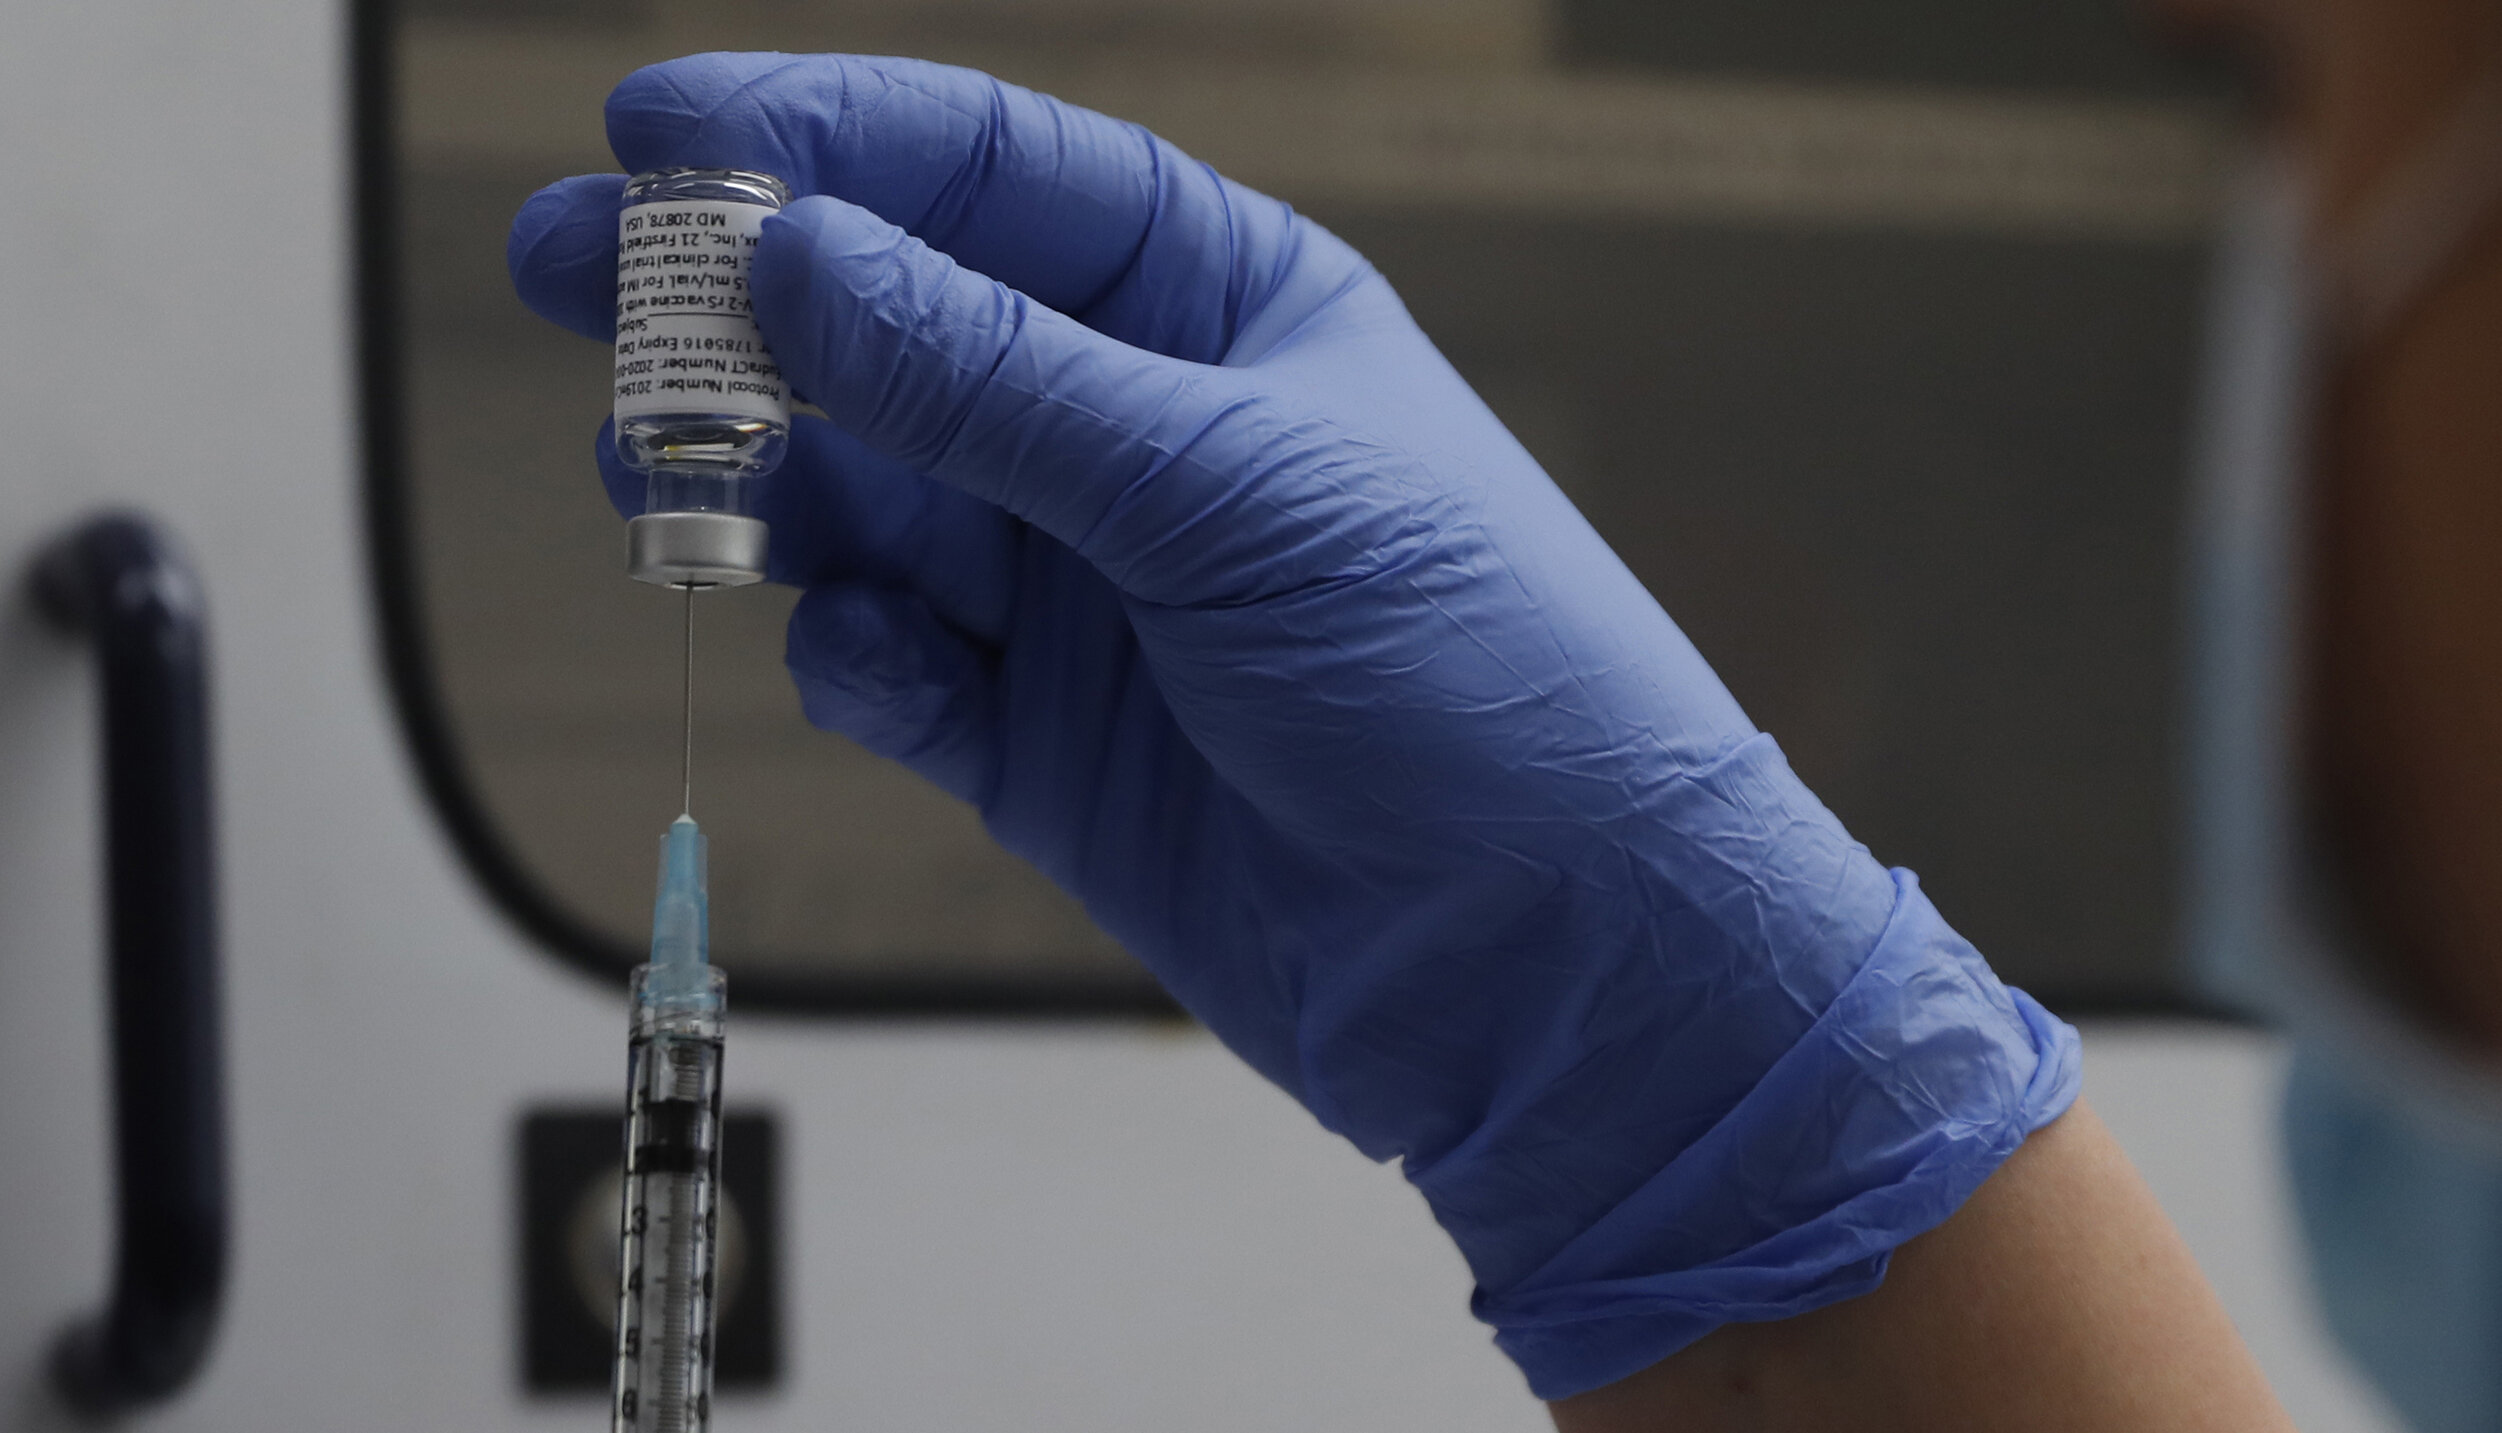 Vaccinul Novavax, dezvoltat prin metoda convențională, va fi disponibil curând în Europa, spune șeful EMA